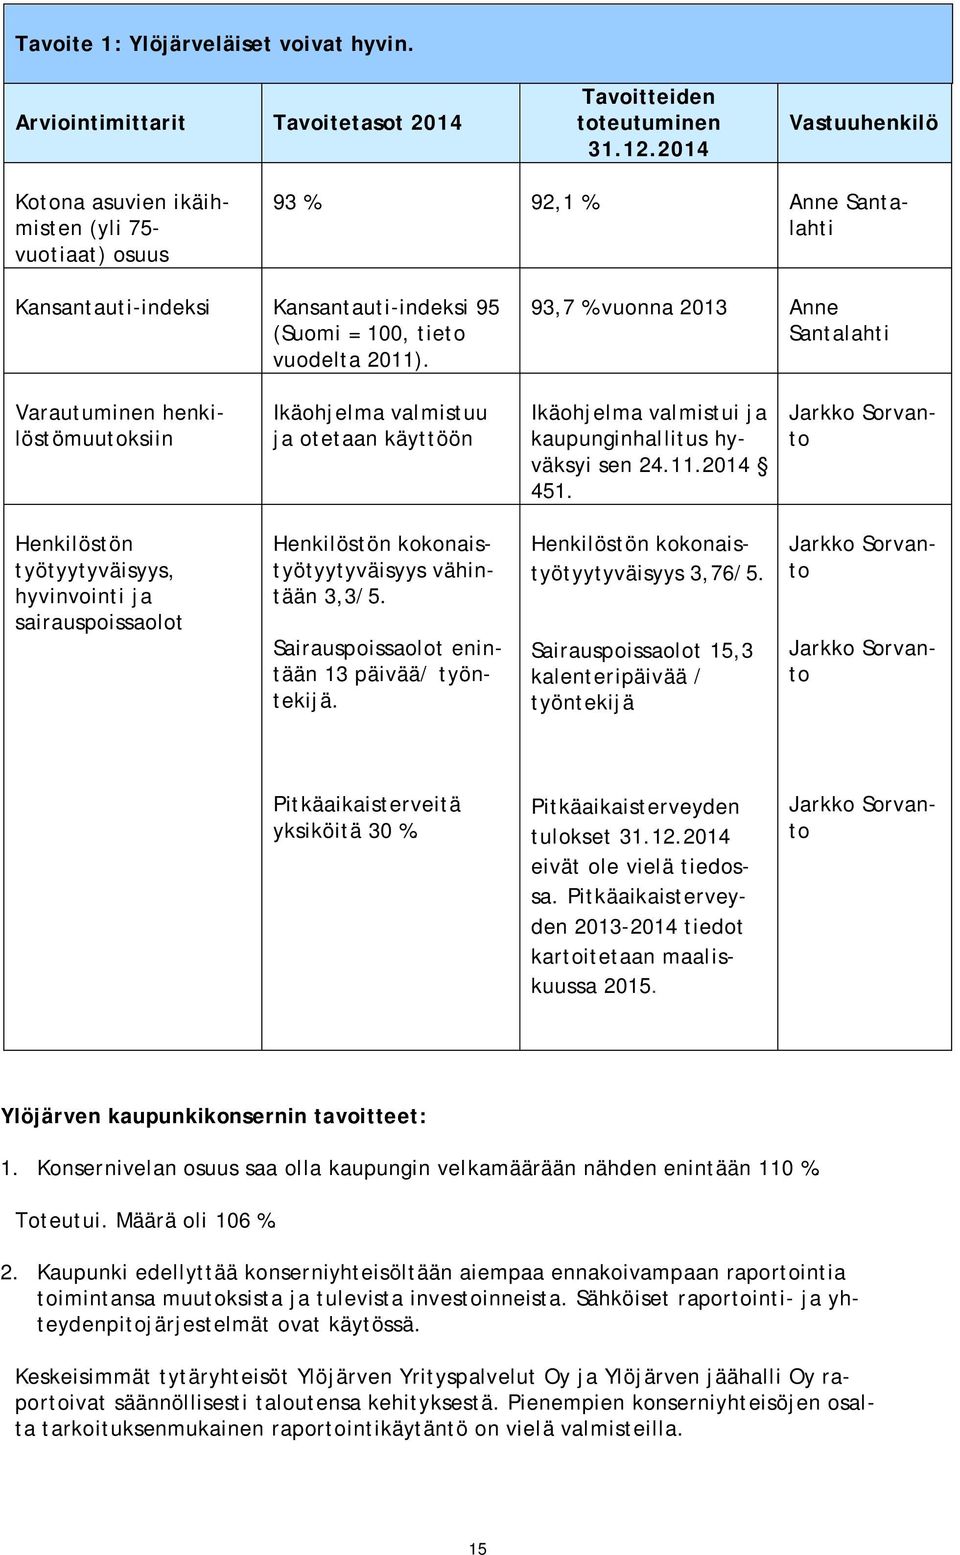 93,7 % vuonna 2013 Anne Santalahti Varautuminen henkilöstömuutoksiin Ikäohjelma valmistuu ja otetaan käyttöön Ikäohjelma valmistui ja kaupunginhallitus hyväksyi sen 24.11.2014 451.